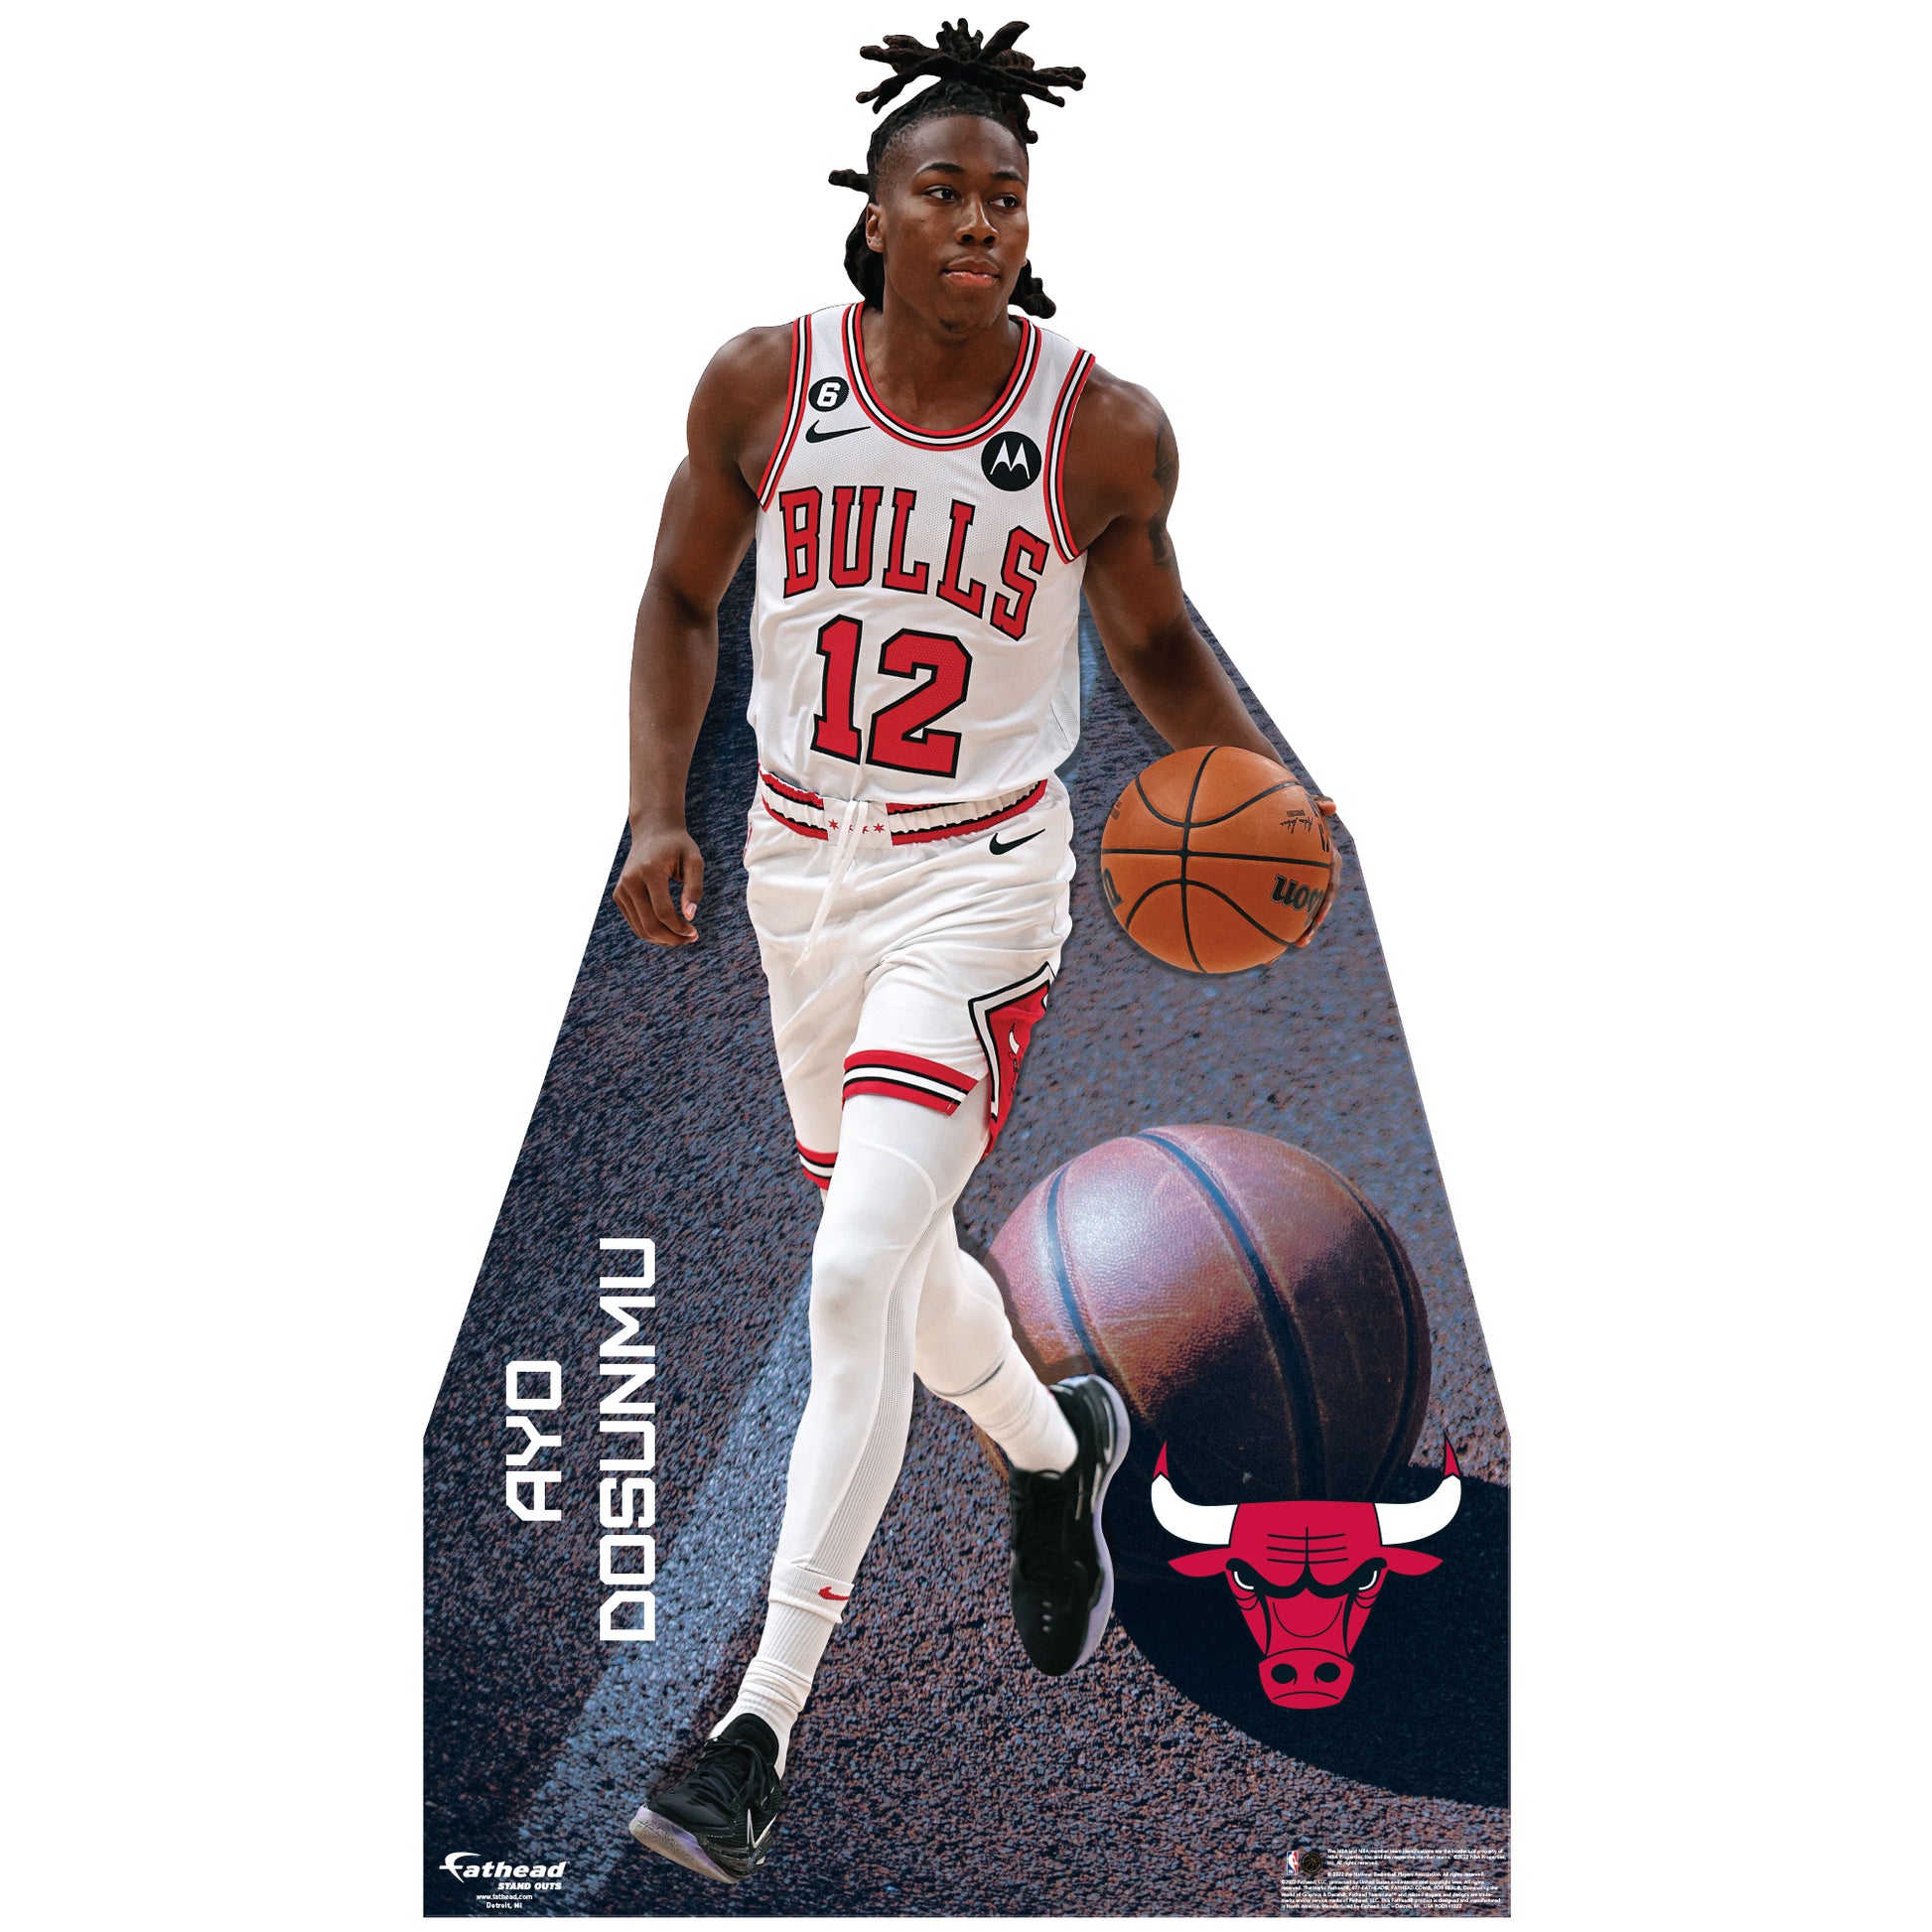 Ayo Dosunmu Basketball Edit Bulls - Ayo Dosunmu - Posters and Art Prints